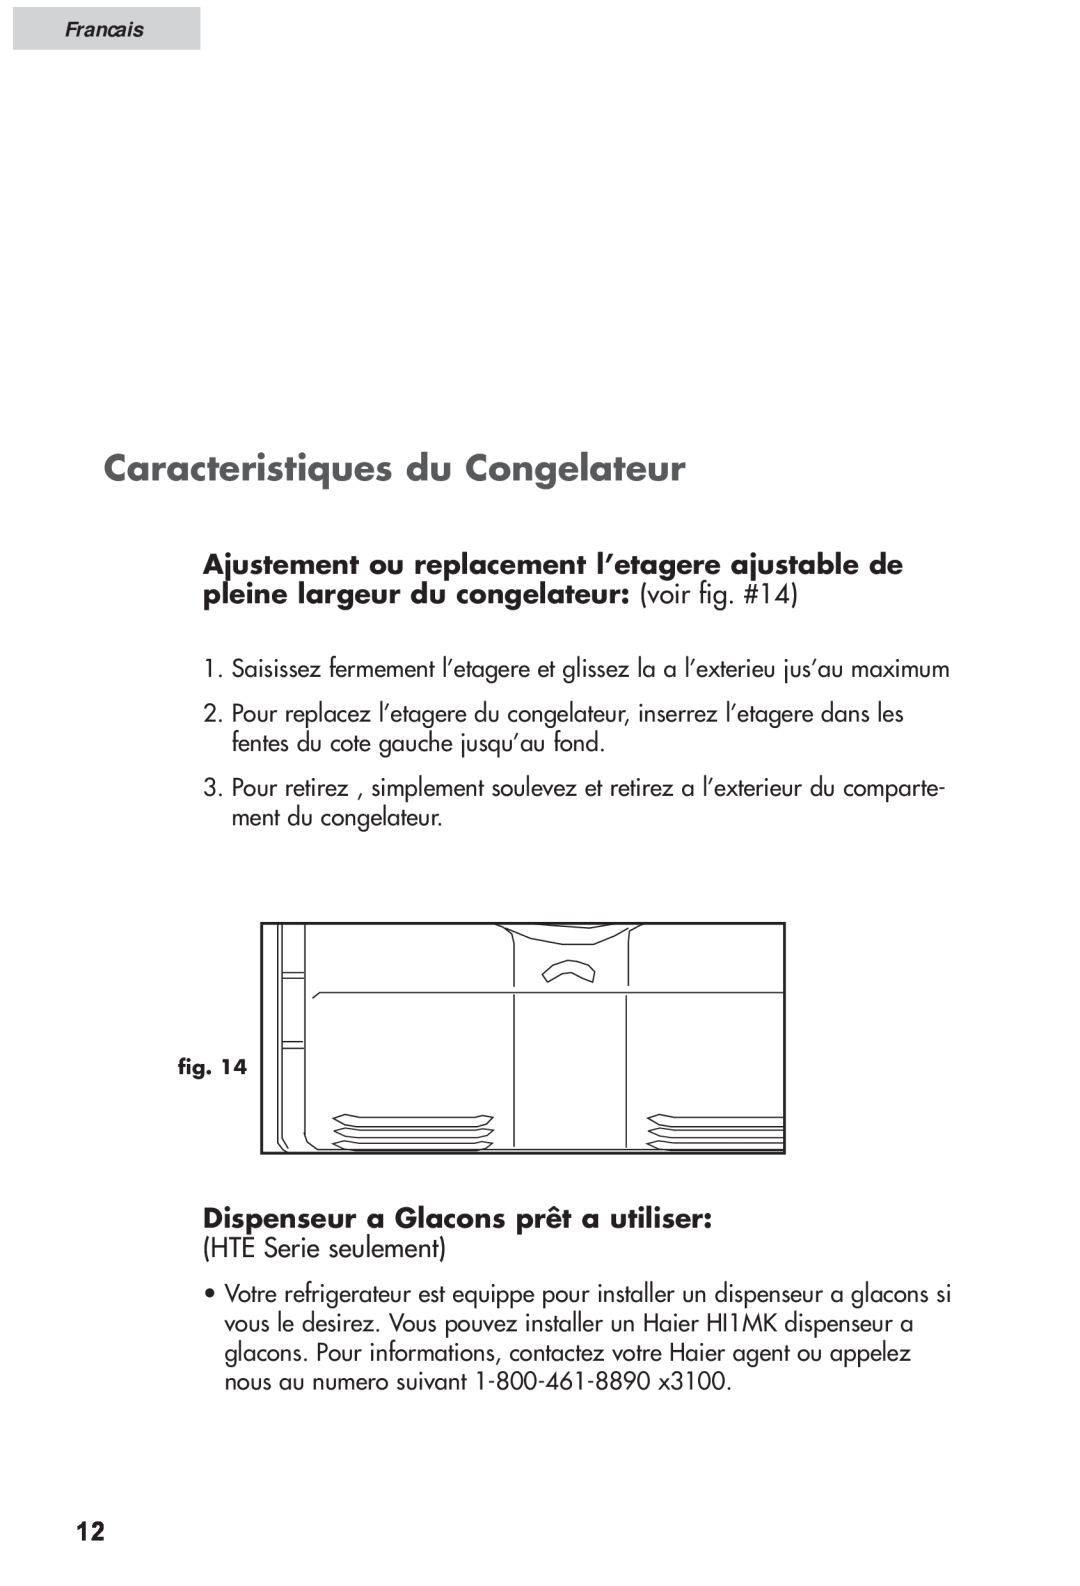 Haier HRF12WNDWW user manual Caracteristiques du Congelateur, Dispenseur a Glacons prêt a utiliser, Francais 